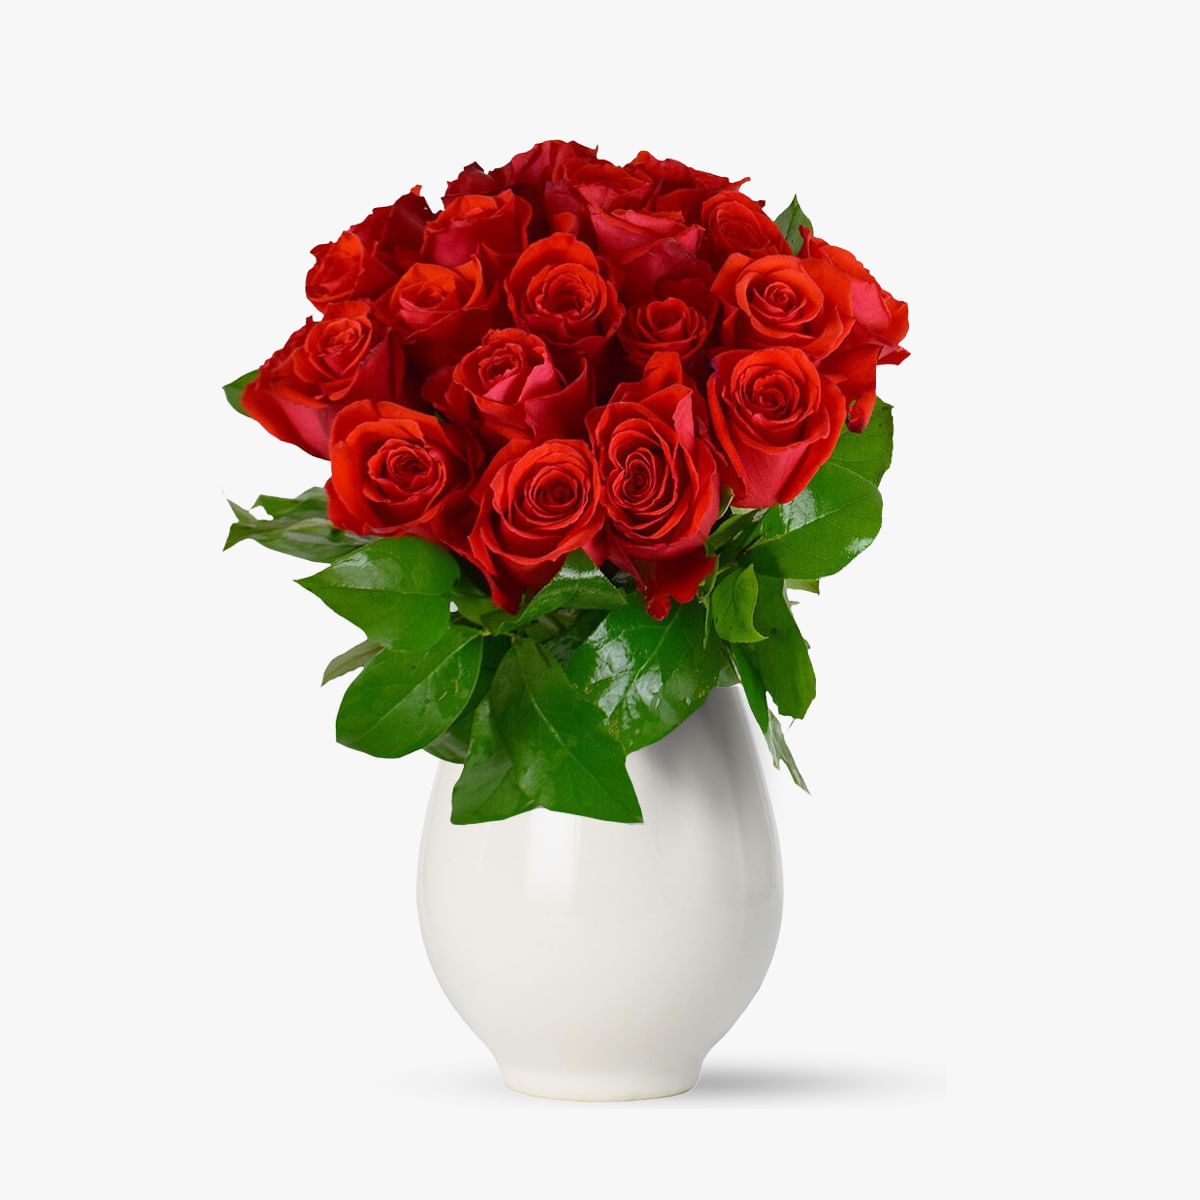 Aranjament floral – Femeia iubita – Standard Aranjament